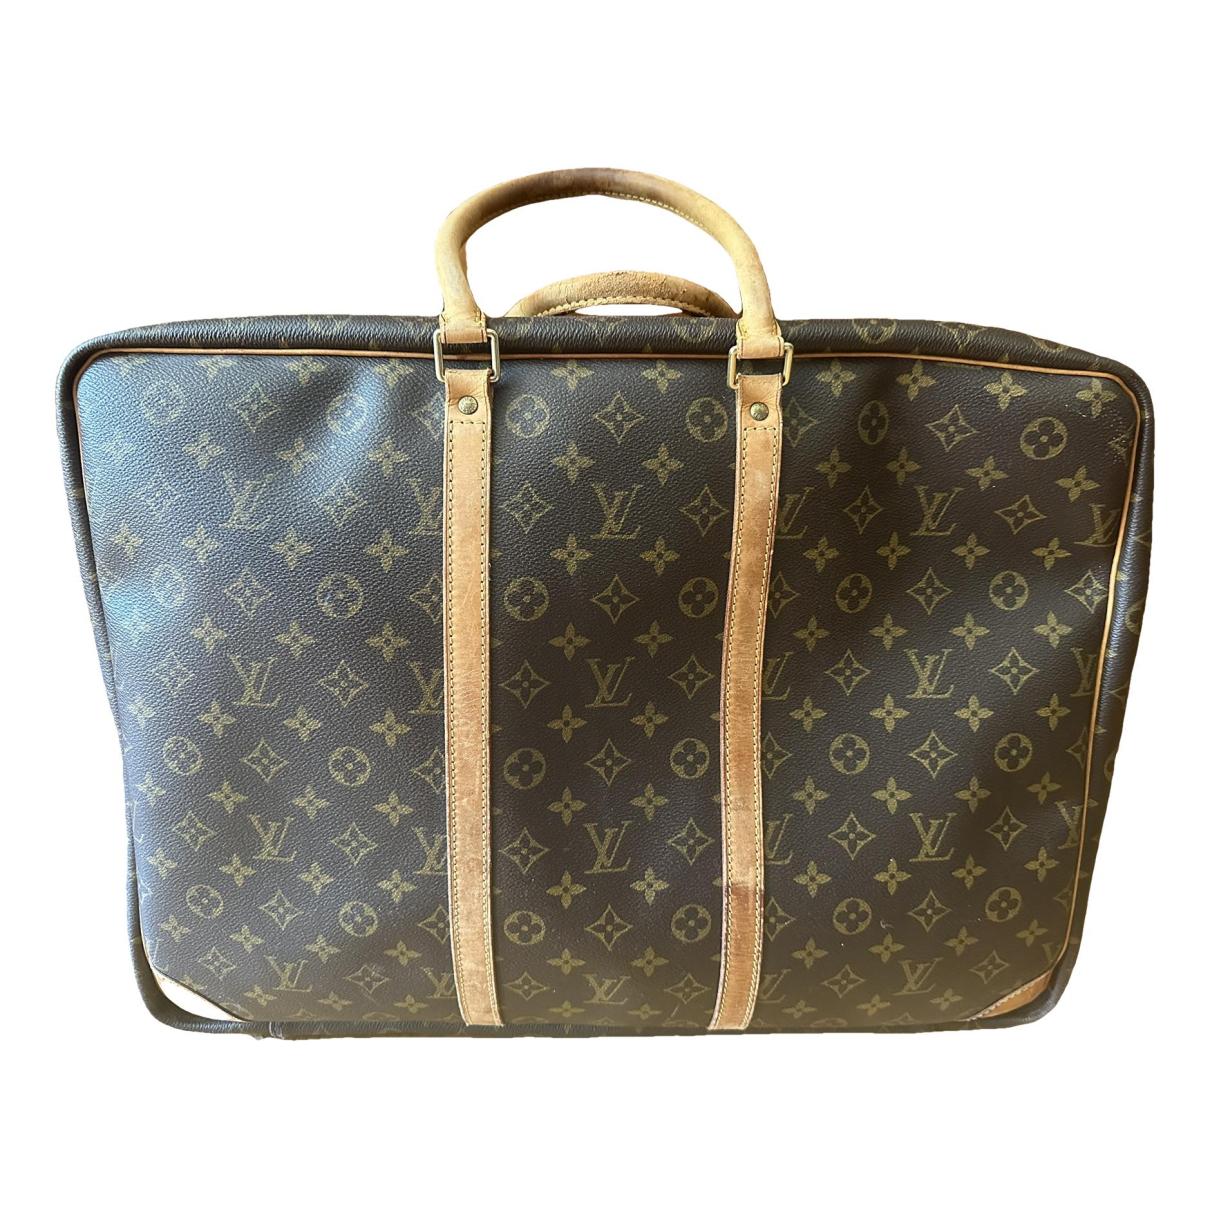 Louis Vuitton - Alize 2 Poches Travel bag - Catawiki